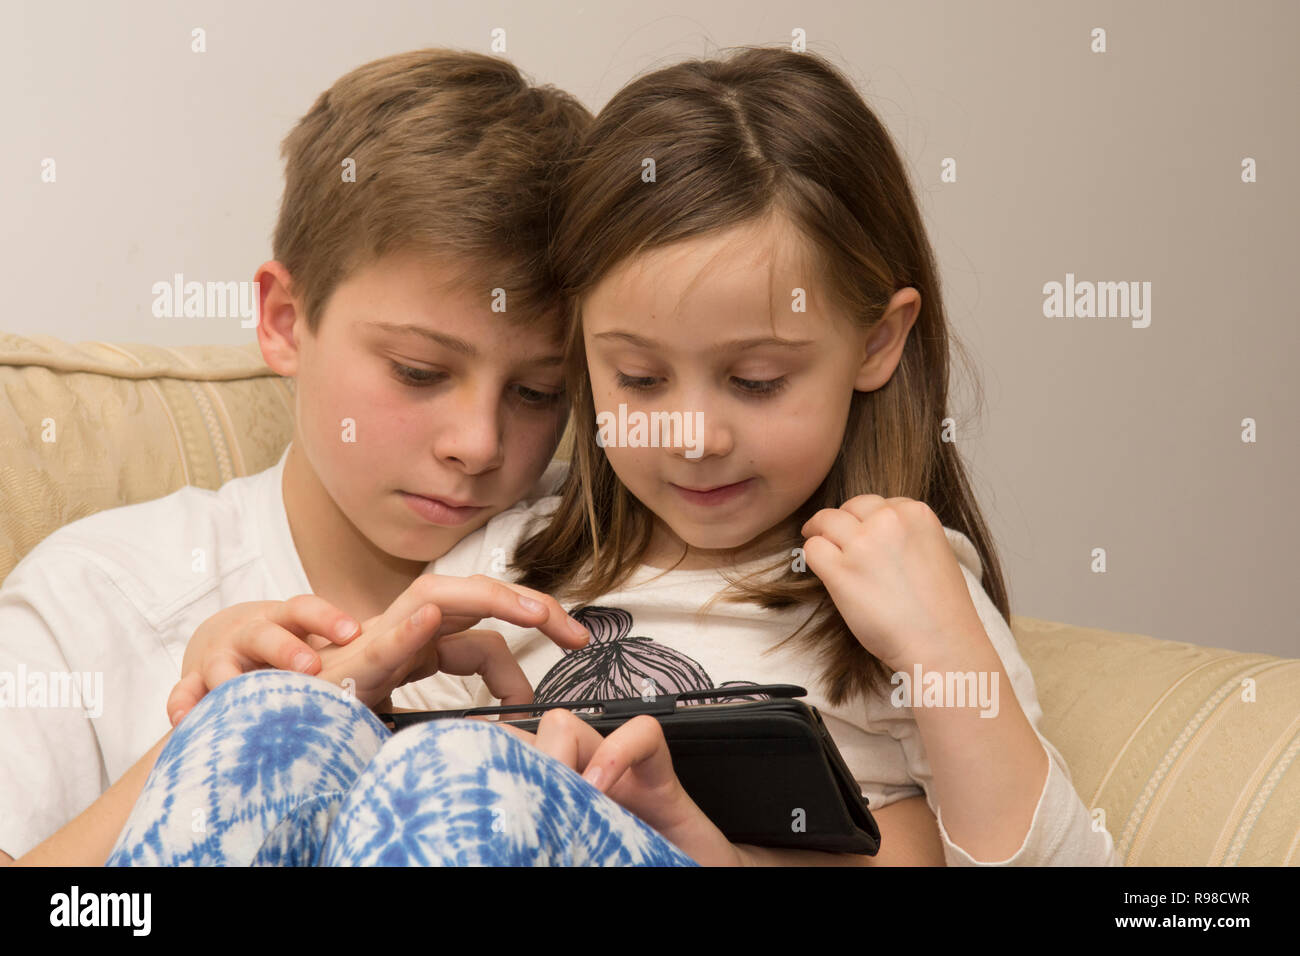 Appareil numérique, tablette, iPad, frère aîné d'aider sœur plus jeune avec les médias sociaux, la technologie moderne Banque D'Images